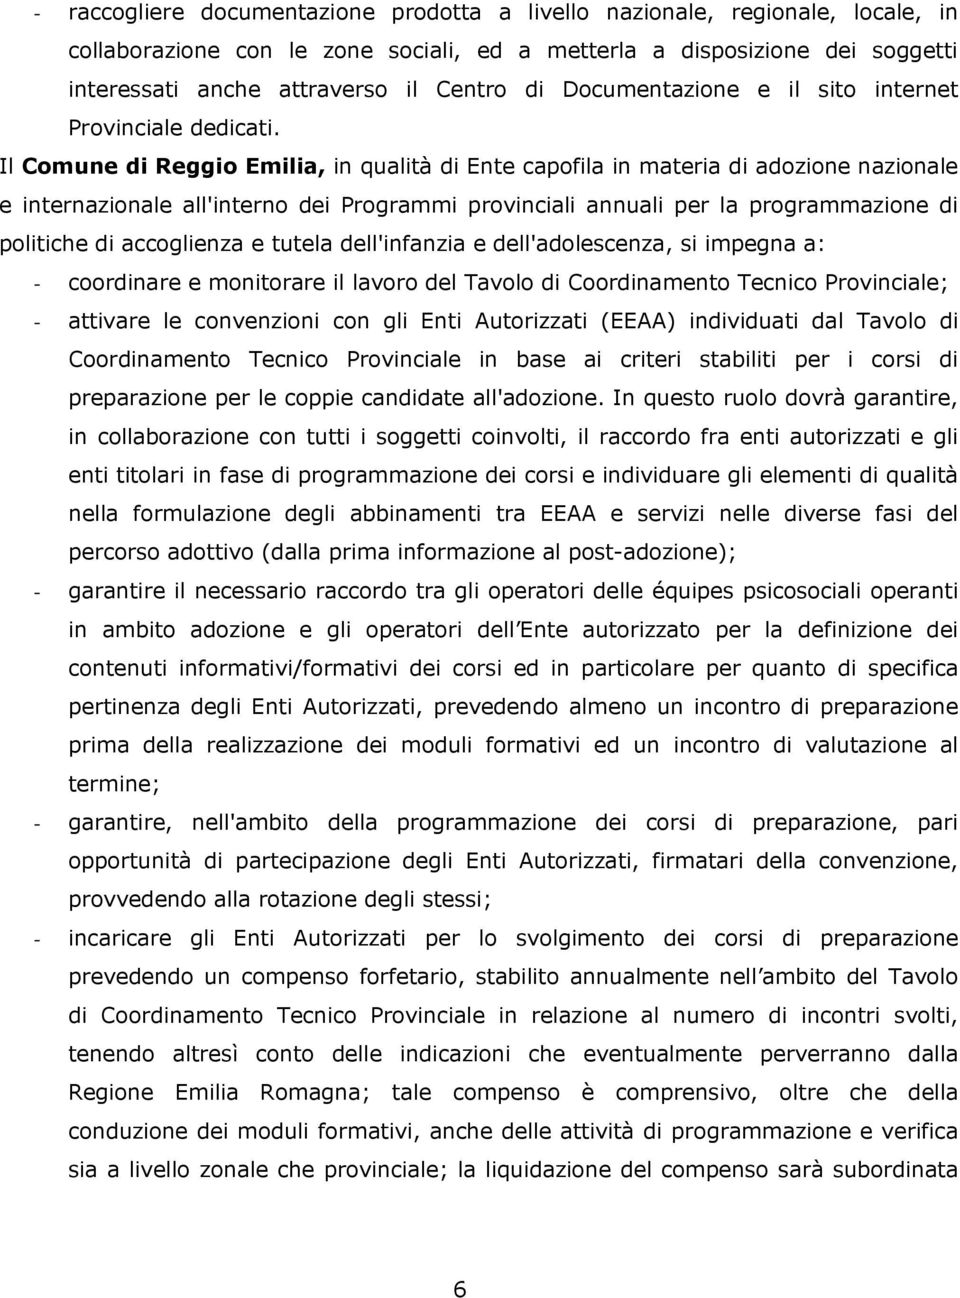 Il Comune di Reggio Emilia, in qualità di Ente capofila in materia di adozione nazionale e internazionale all'interno dei Programmi provinciali annuali per la programmazione di politiche di